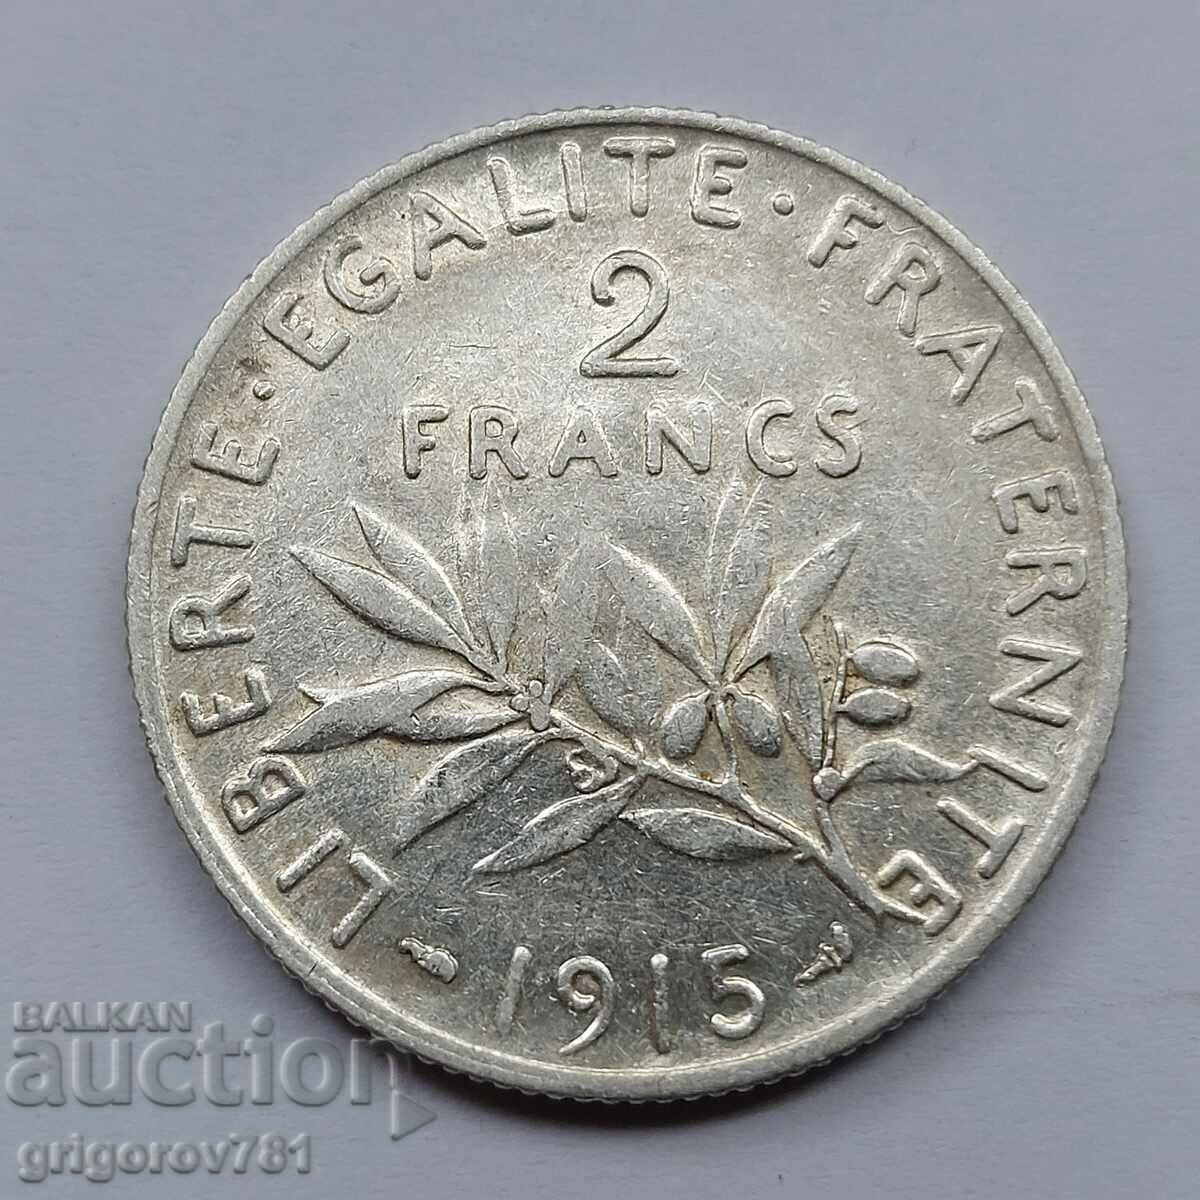 2 Franci Argint Franta 1915 - Moneda de argint #123